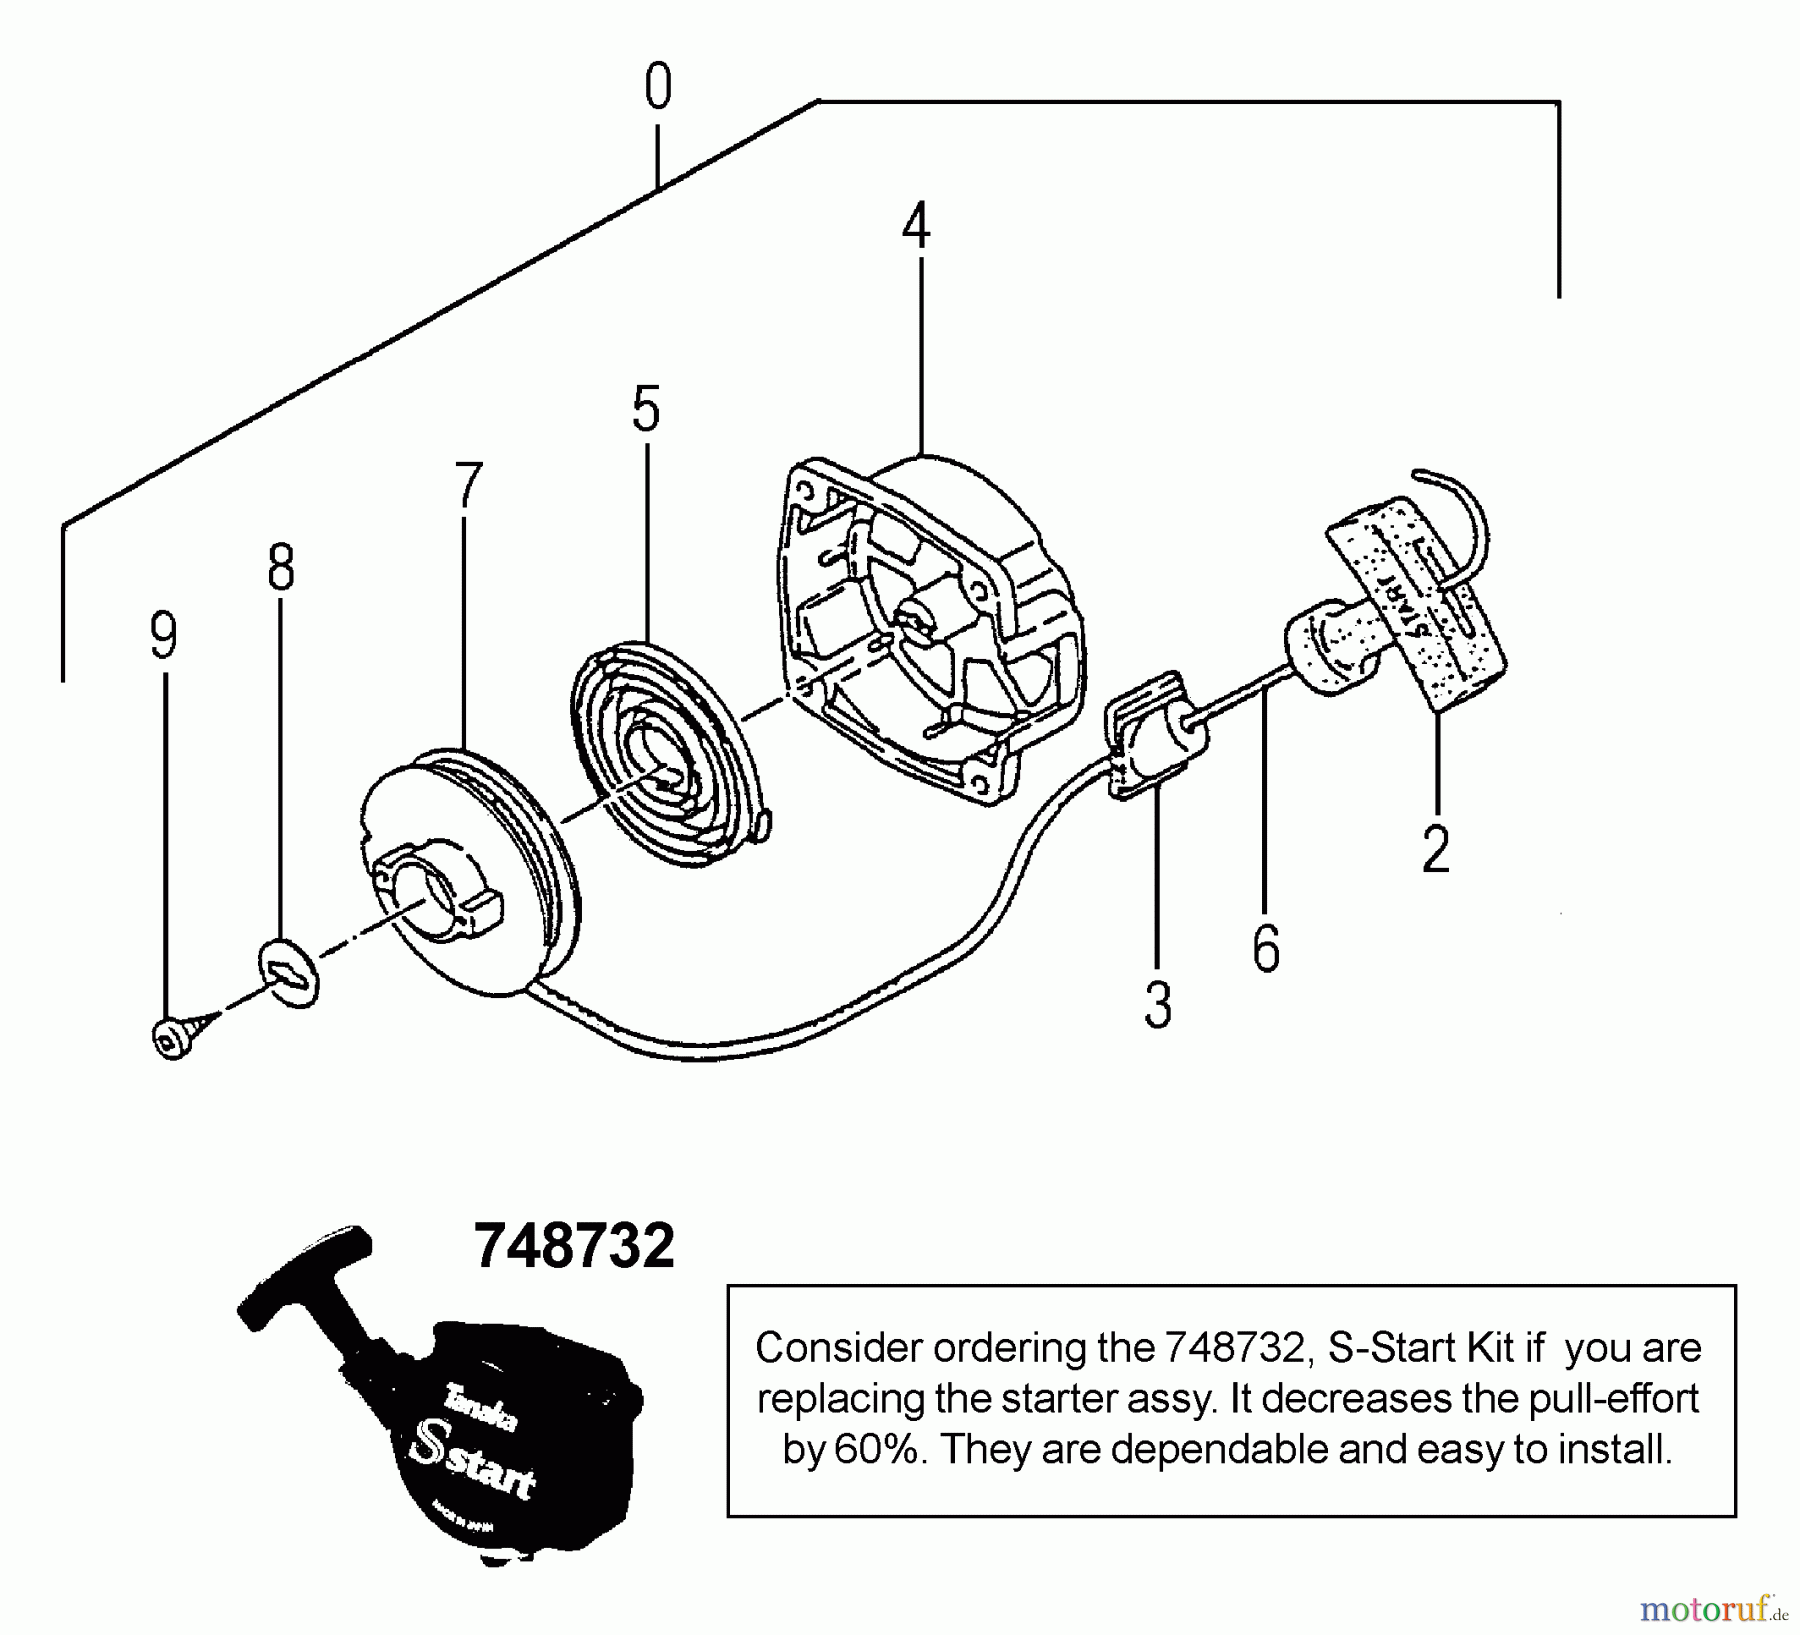  Tanaka Trimmer, Motorsensen TBC-340 - Tanaka Grass Trimmer / Brush Cutter Recoil Starter